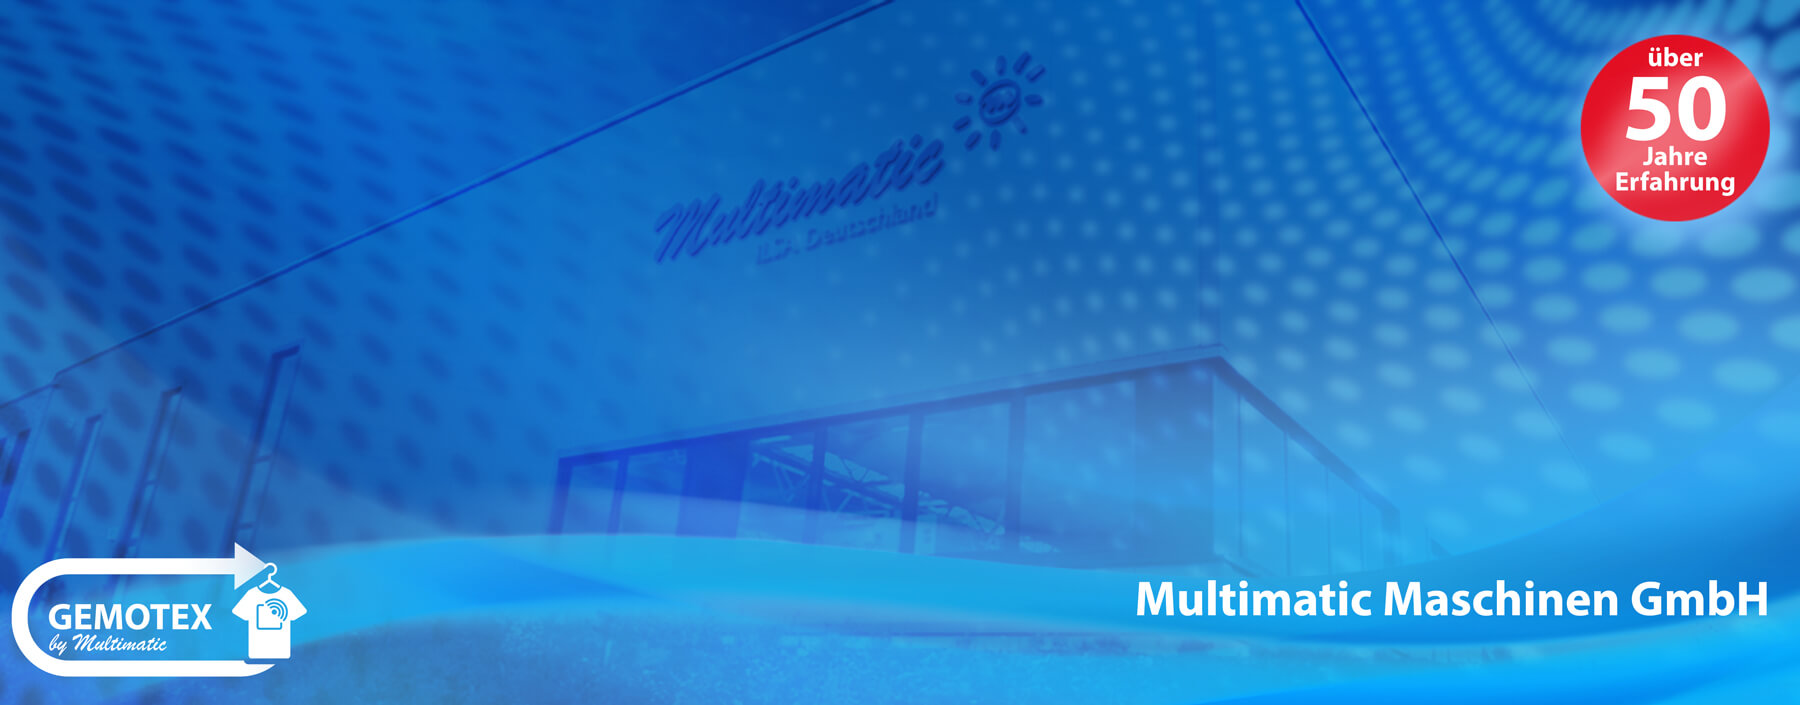 Multimatic Maschinen GmbH Firmengebäude